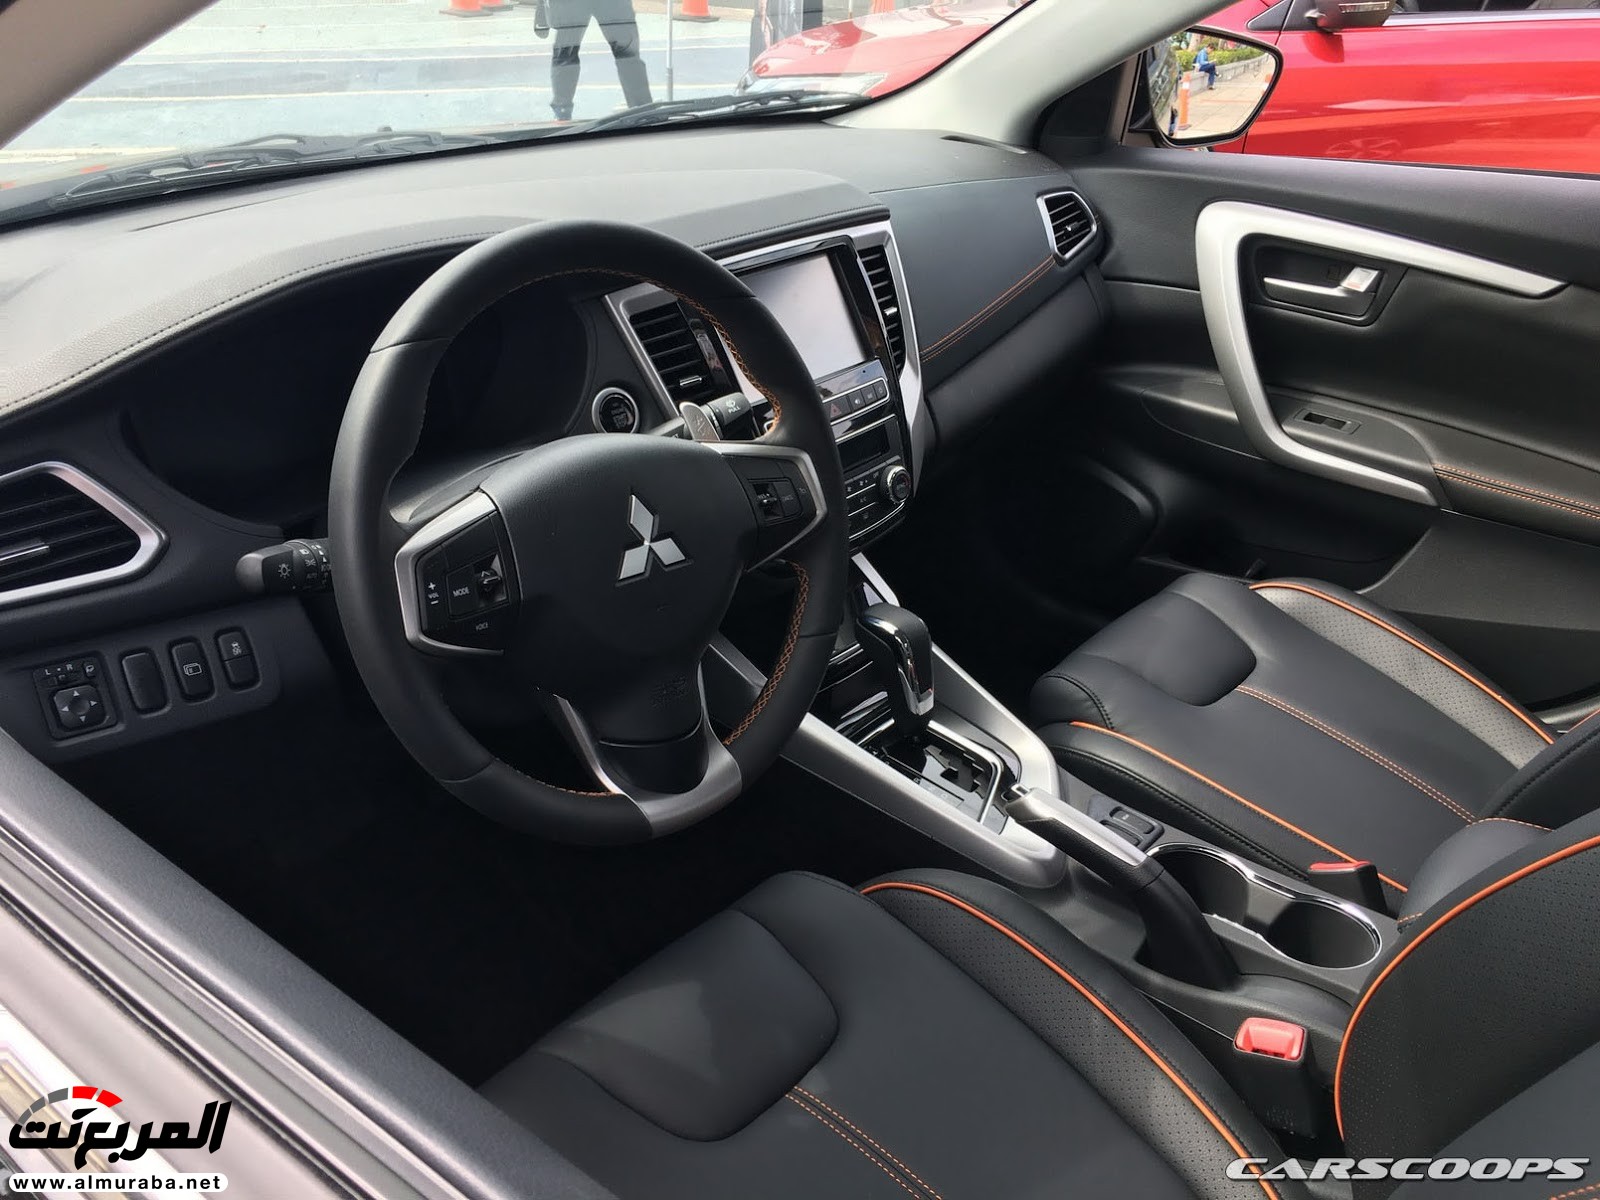 "بالصور" ميتسوبيشي جراند لانسر 2018 الجديدة تكشف نفسها "تقرير ومواصفات" Mitsubishi Grand Lancer 7